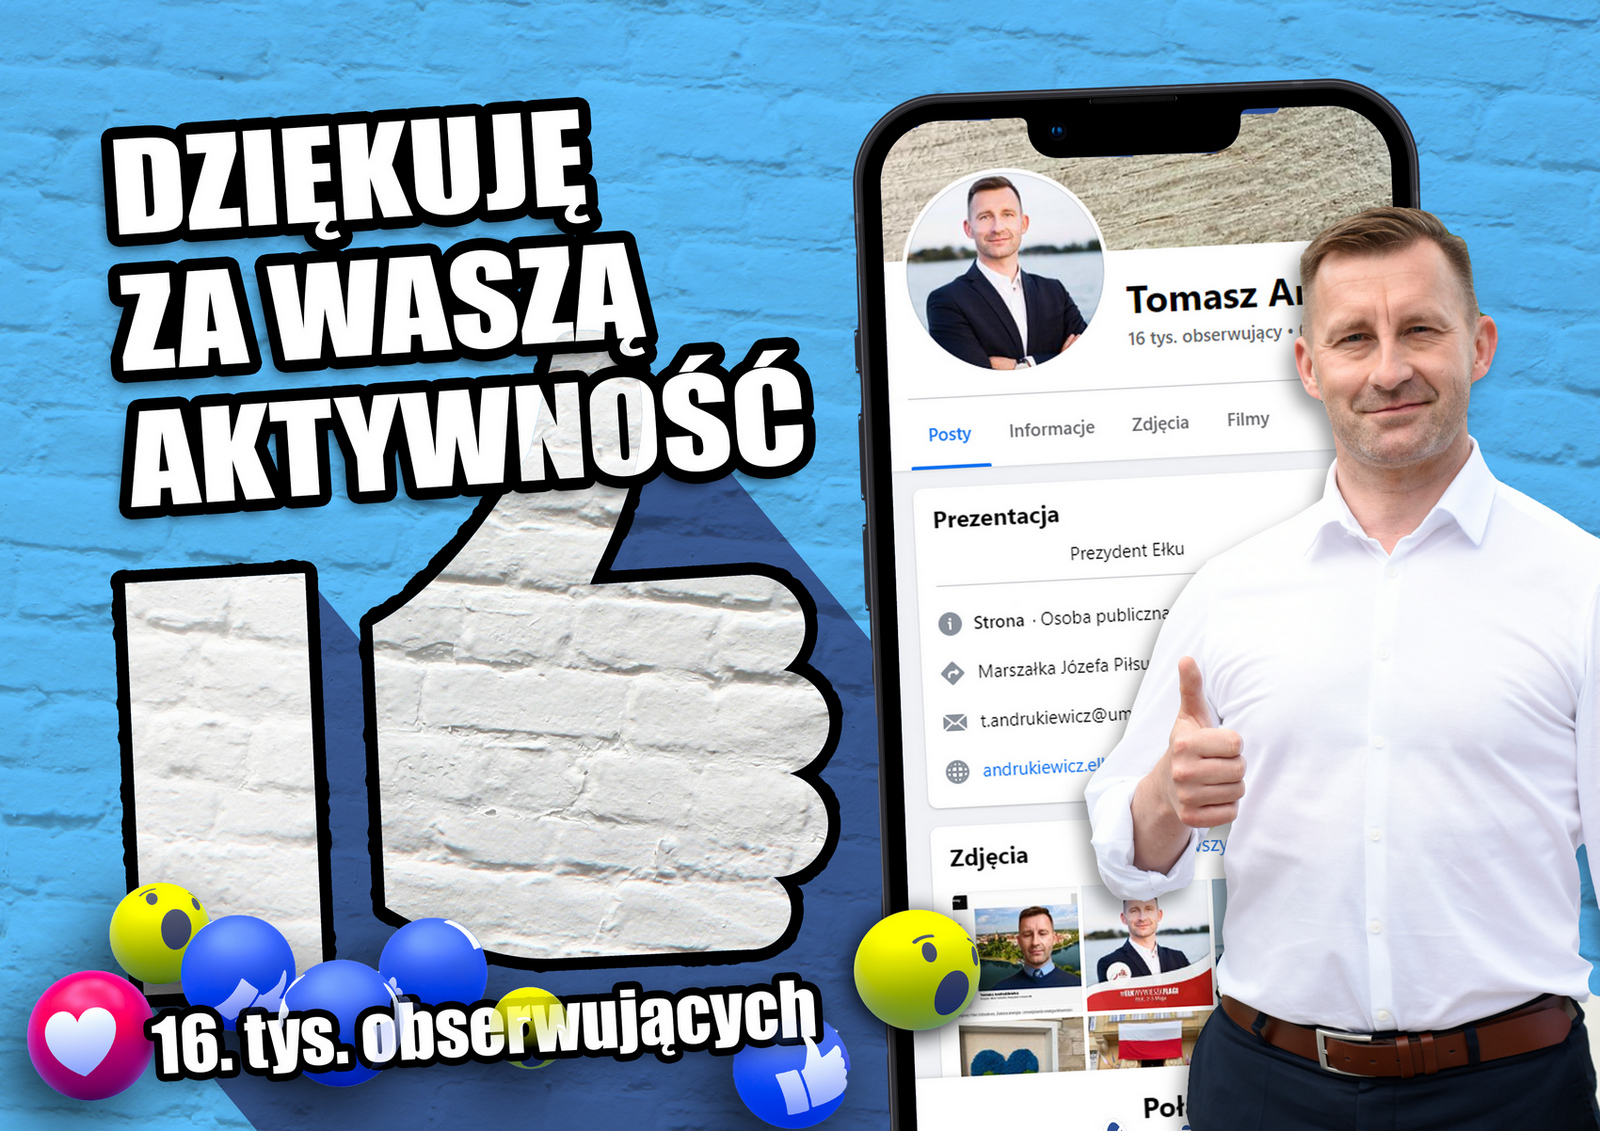 Präsident von Ełk unter den 10 beliebtesten Präsidenten in den sozialen Medien